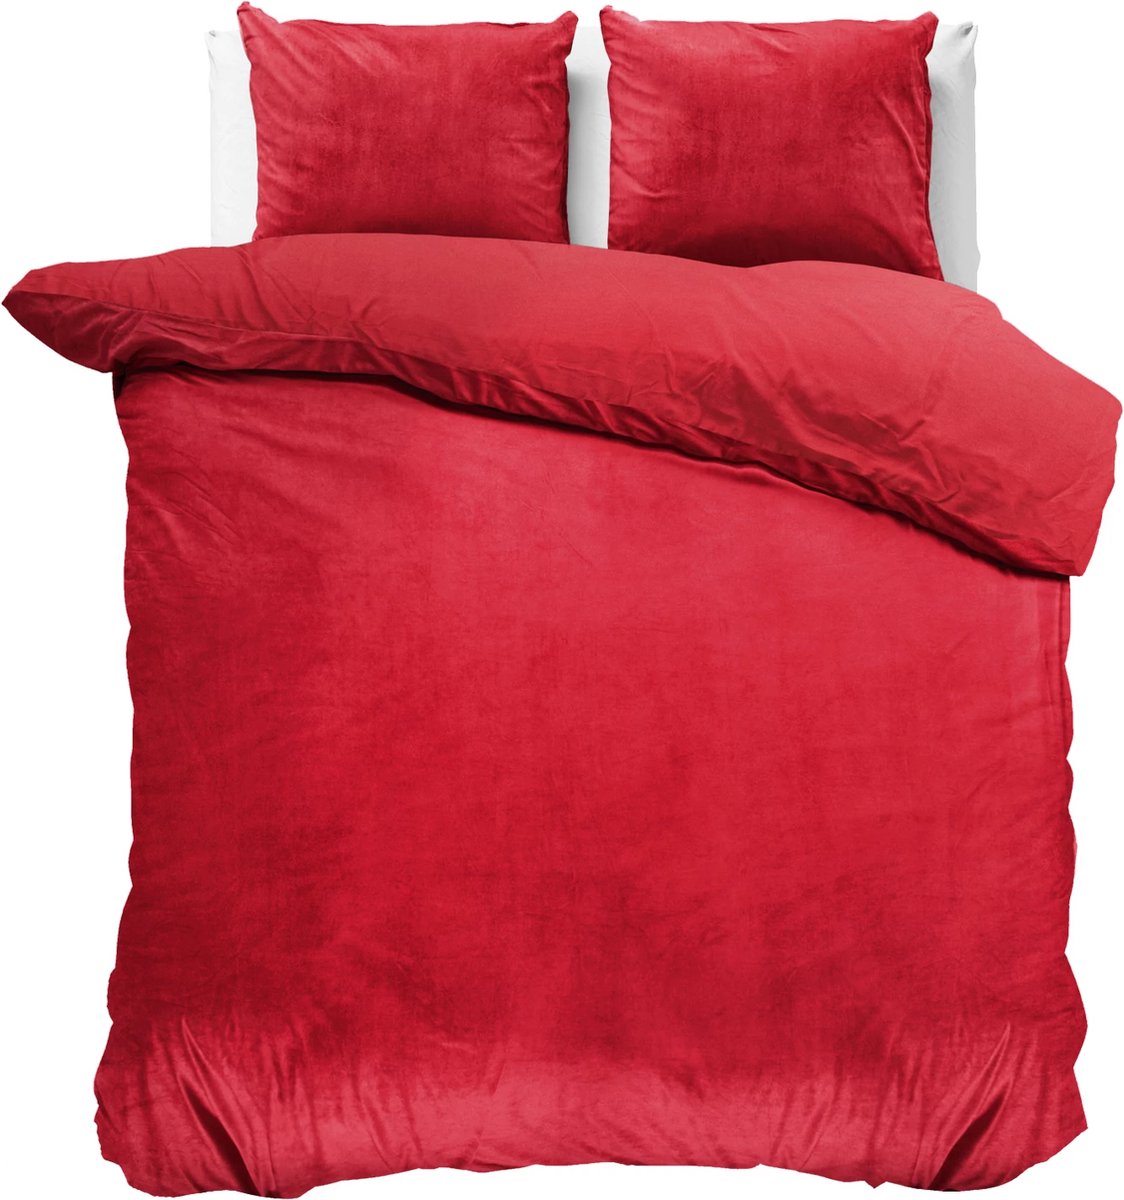 Fluweel zachte velvet dekbedovertrek uni rood - 240x200/220 (lits-jumeaux) - super fijn slapen - stijlvolle uitstraling - luxe kwaliteit - met handige drukknopen